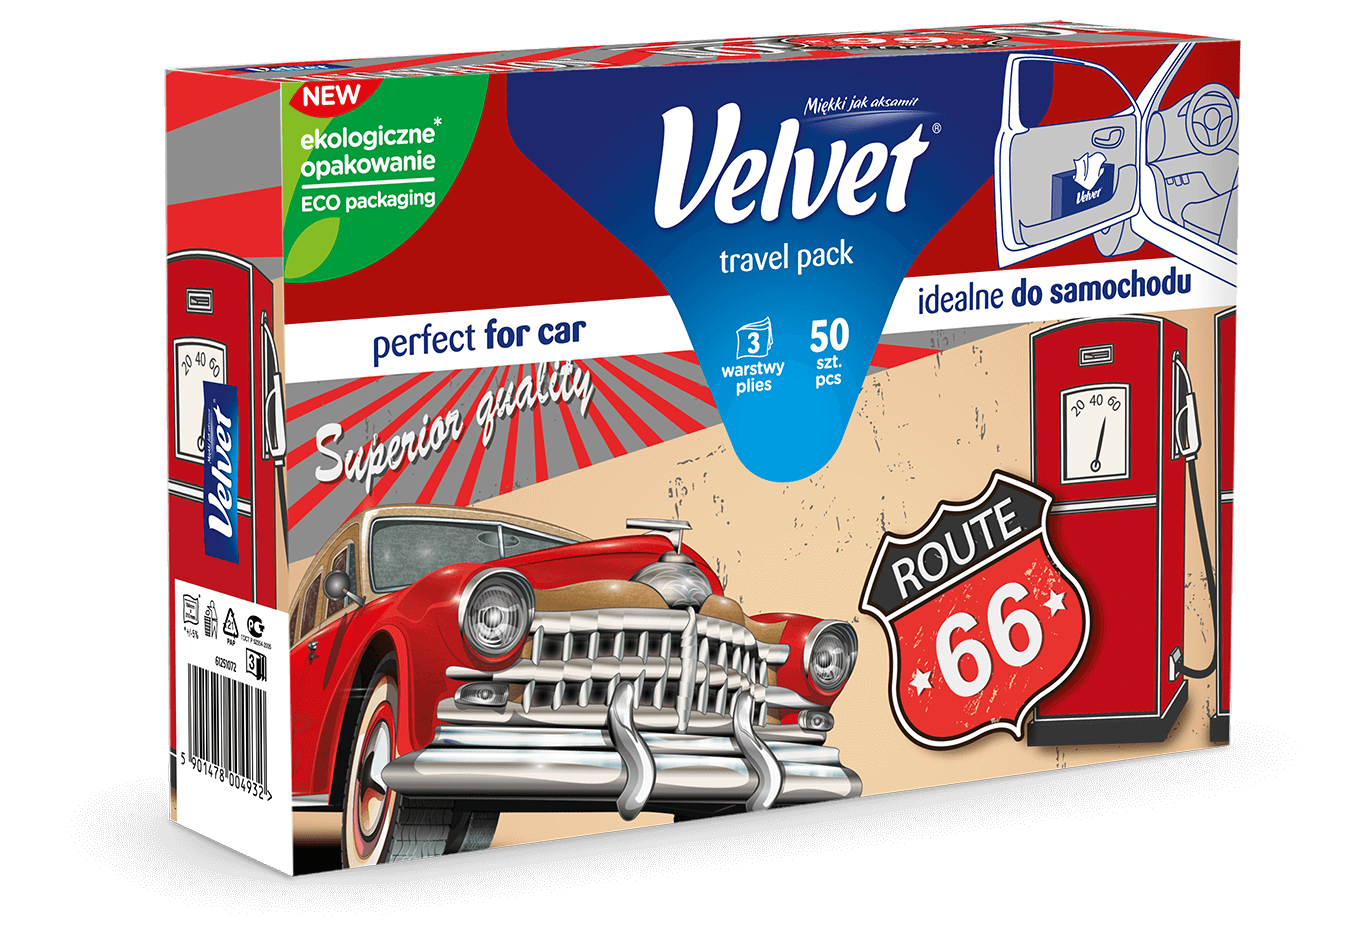 Chusteczki higieniczne Velvet Travel Pack – kolorystyka w odcieniach czerwieni